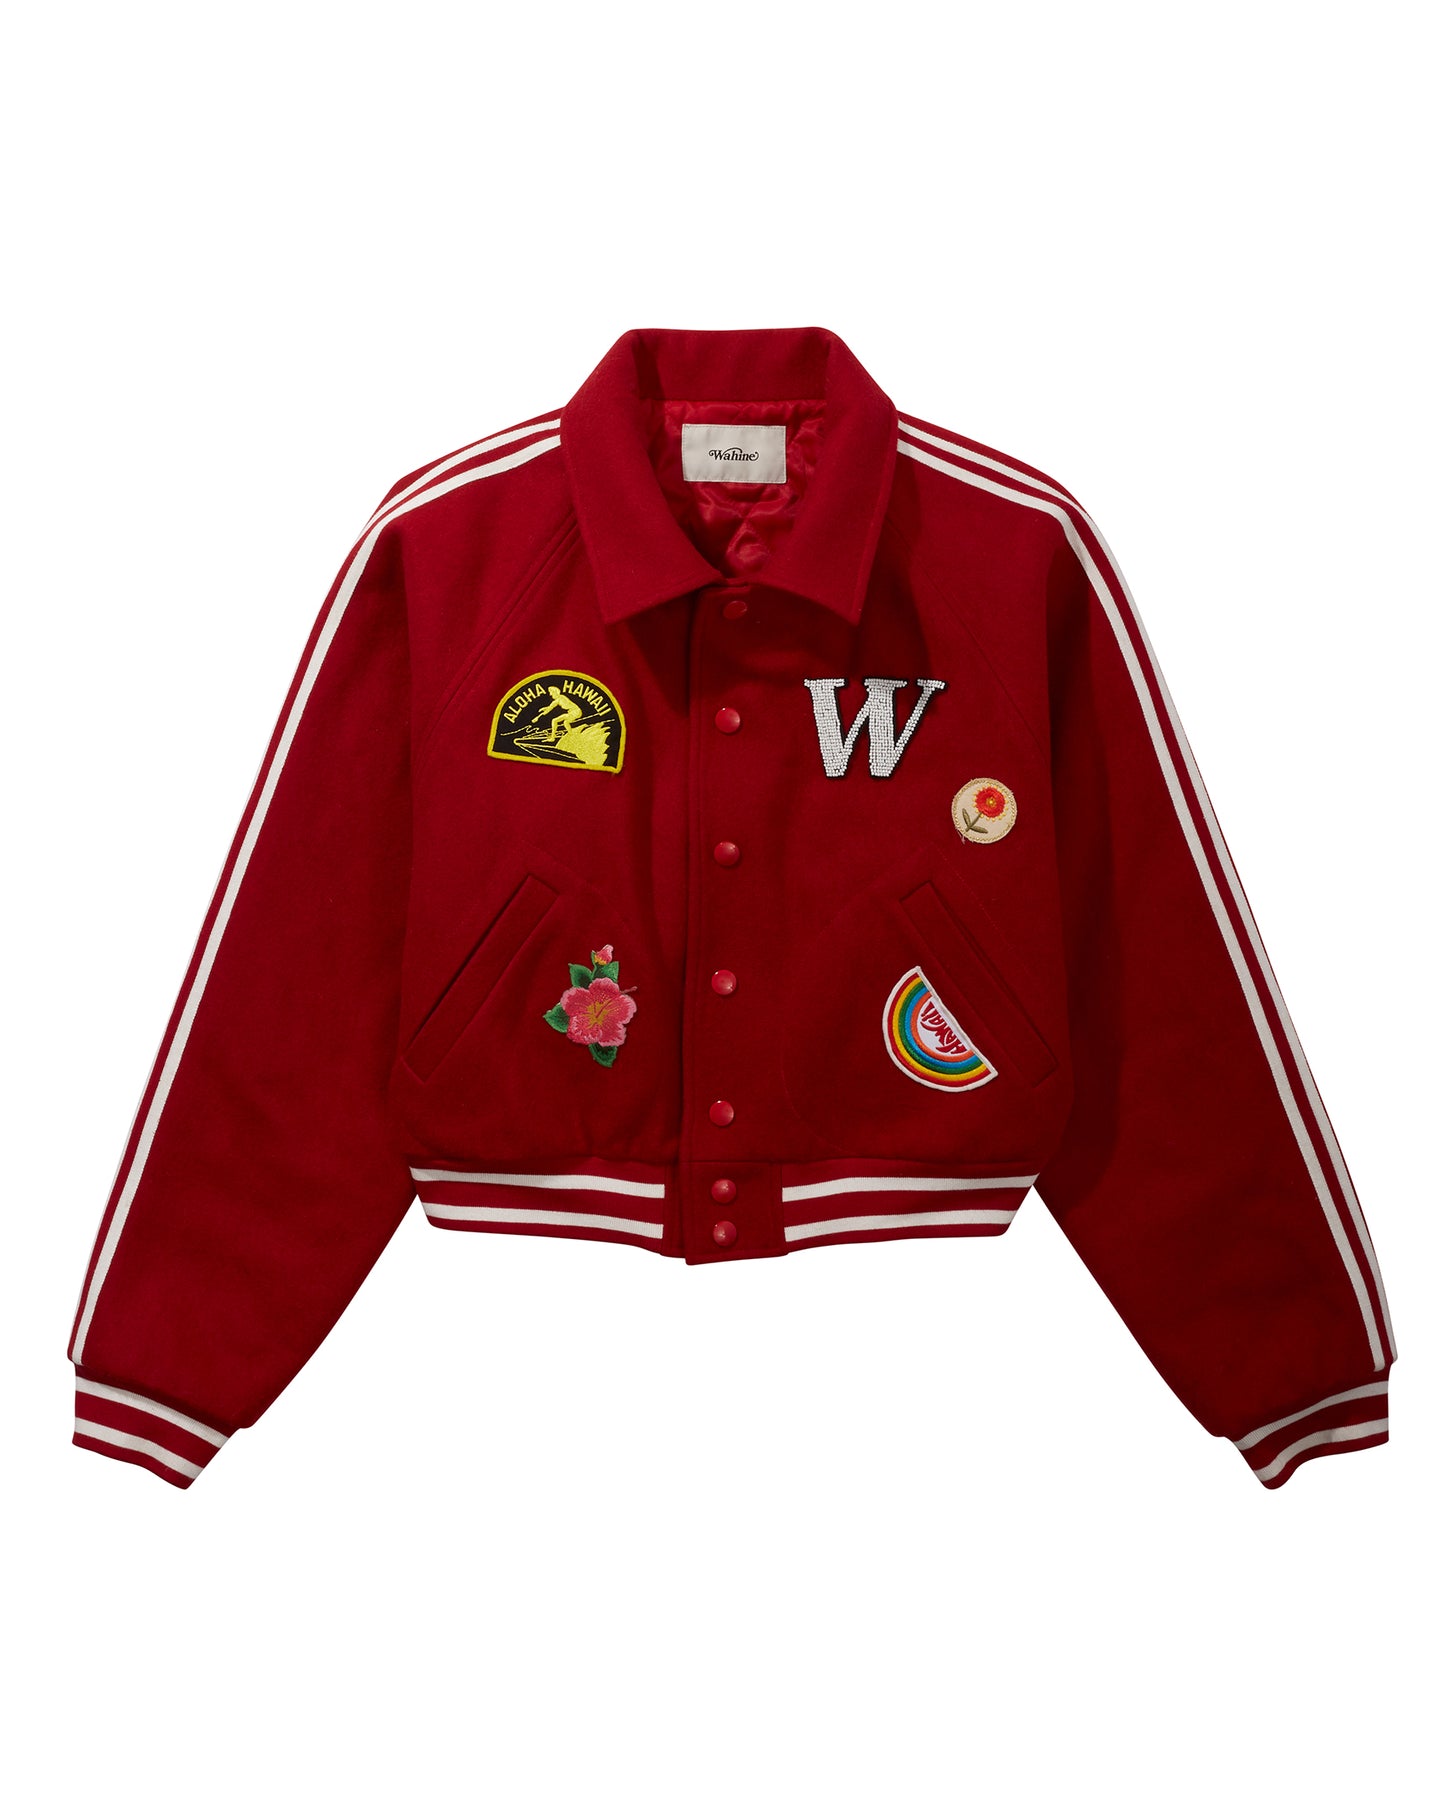 Red Wahine UniVarsity Jacket